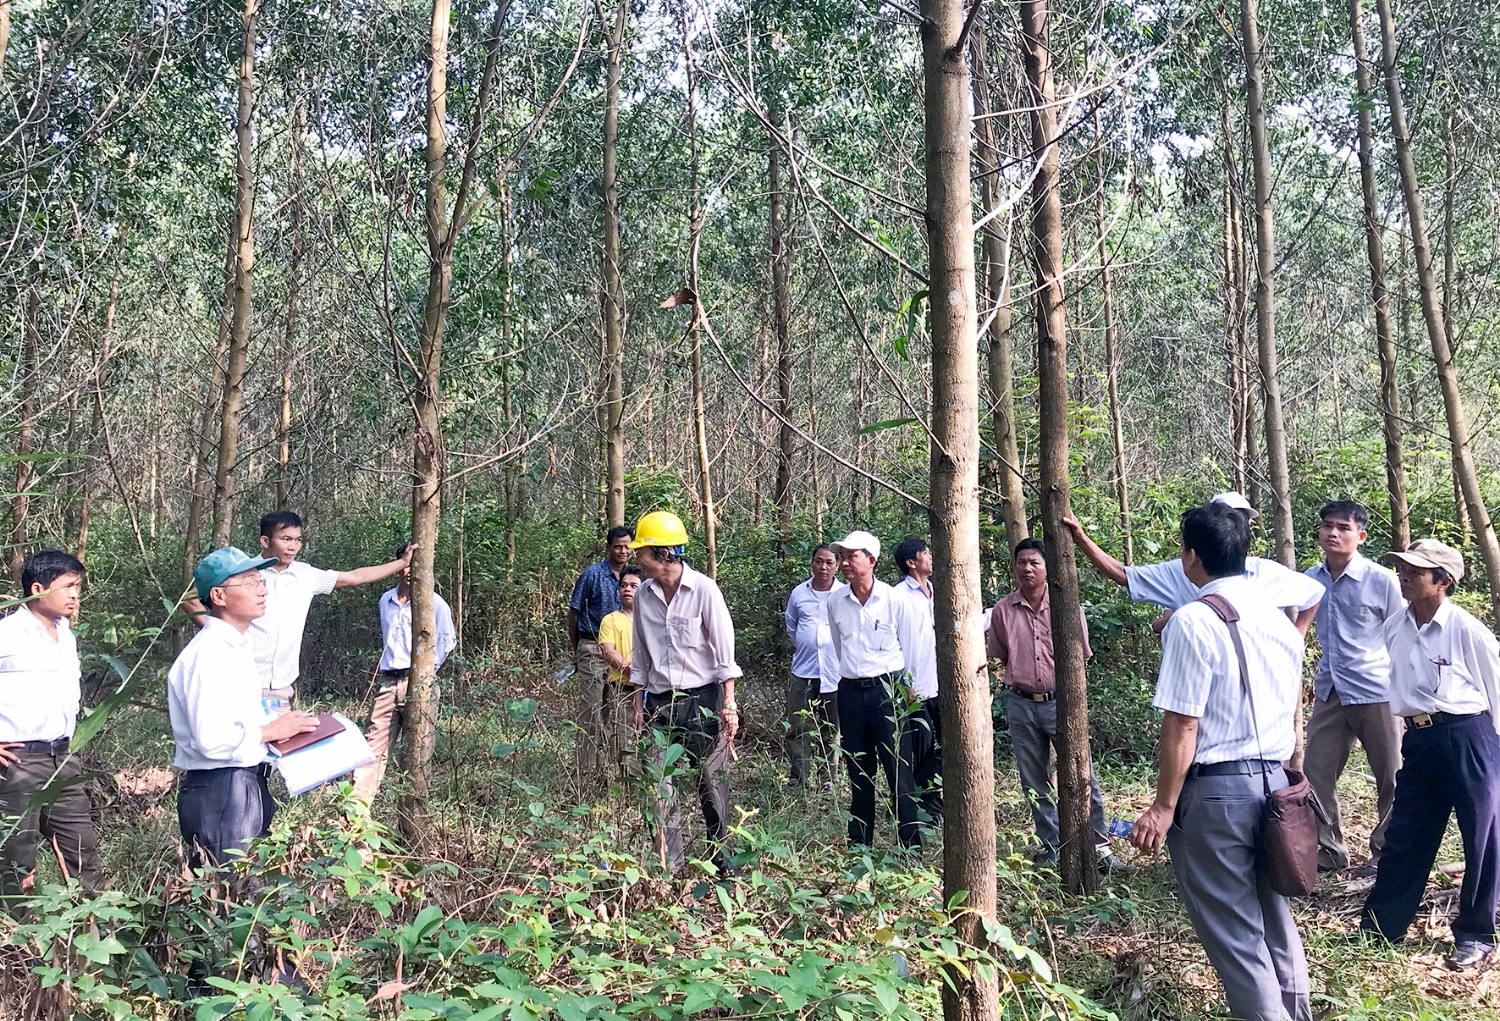 Cũng từ chủ trương giao rừng, nhiều hộ gia đình ở xã vĩnh Chấp, huyện Vĩnh Linh đã vươn lên làm giàu chính đáng từ rừng